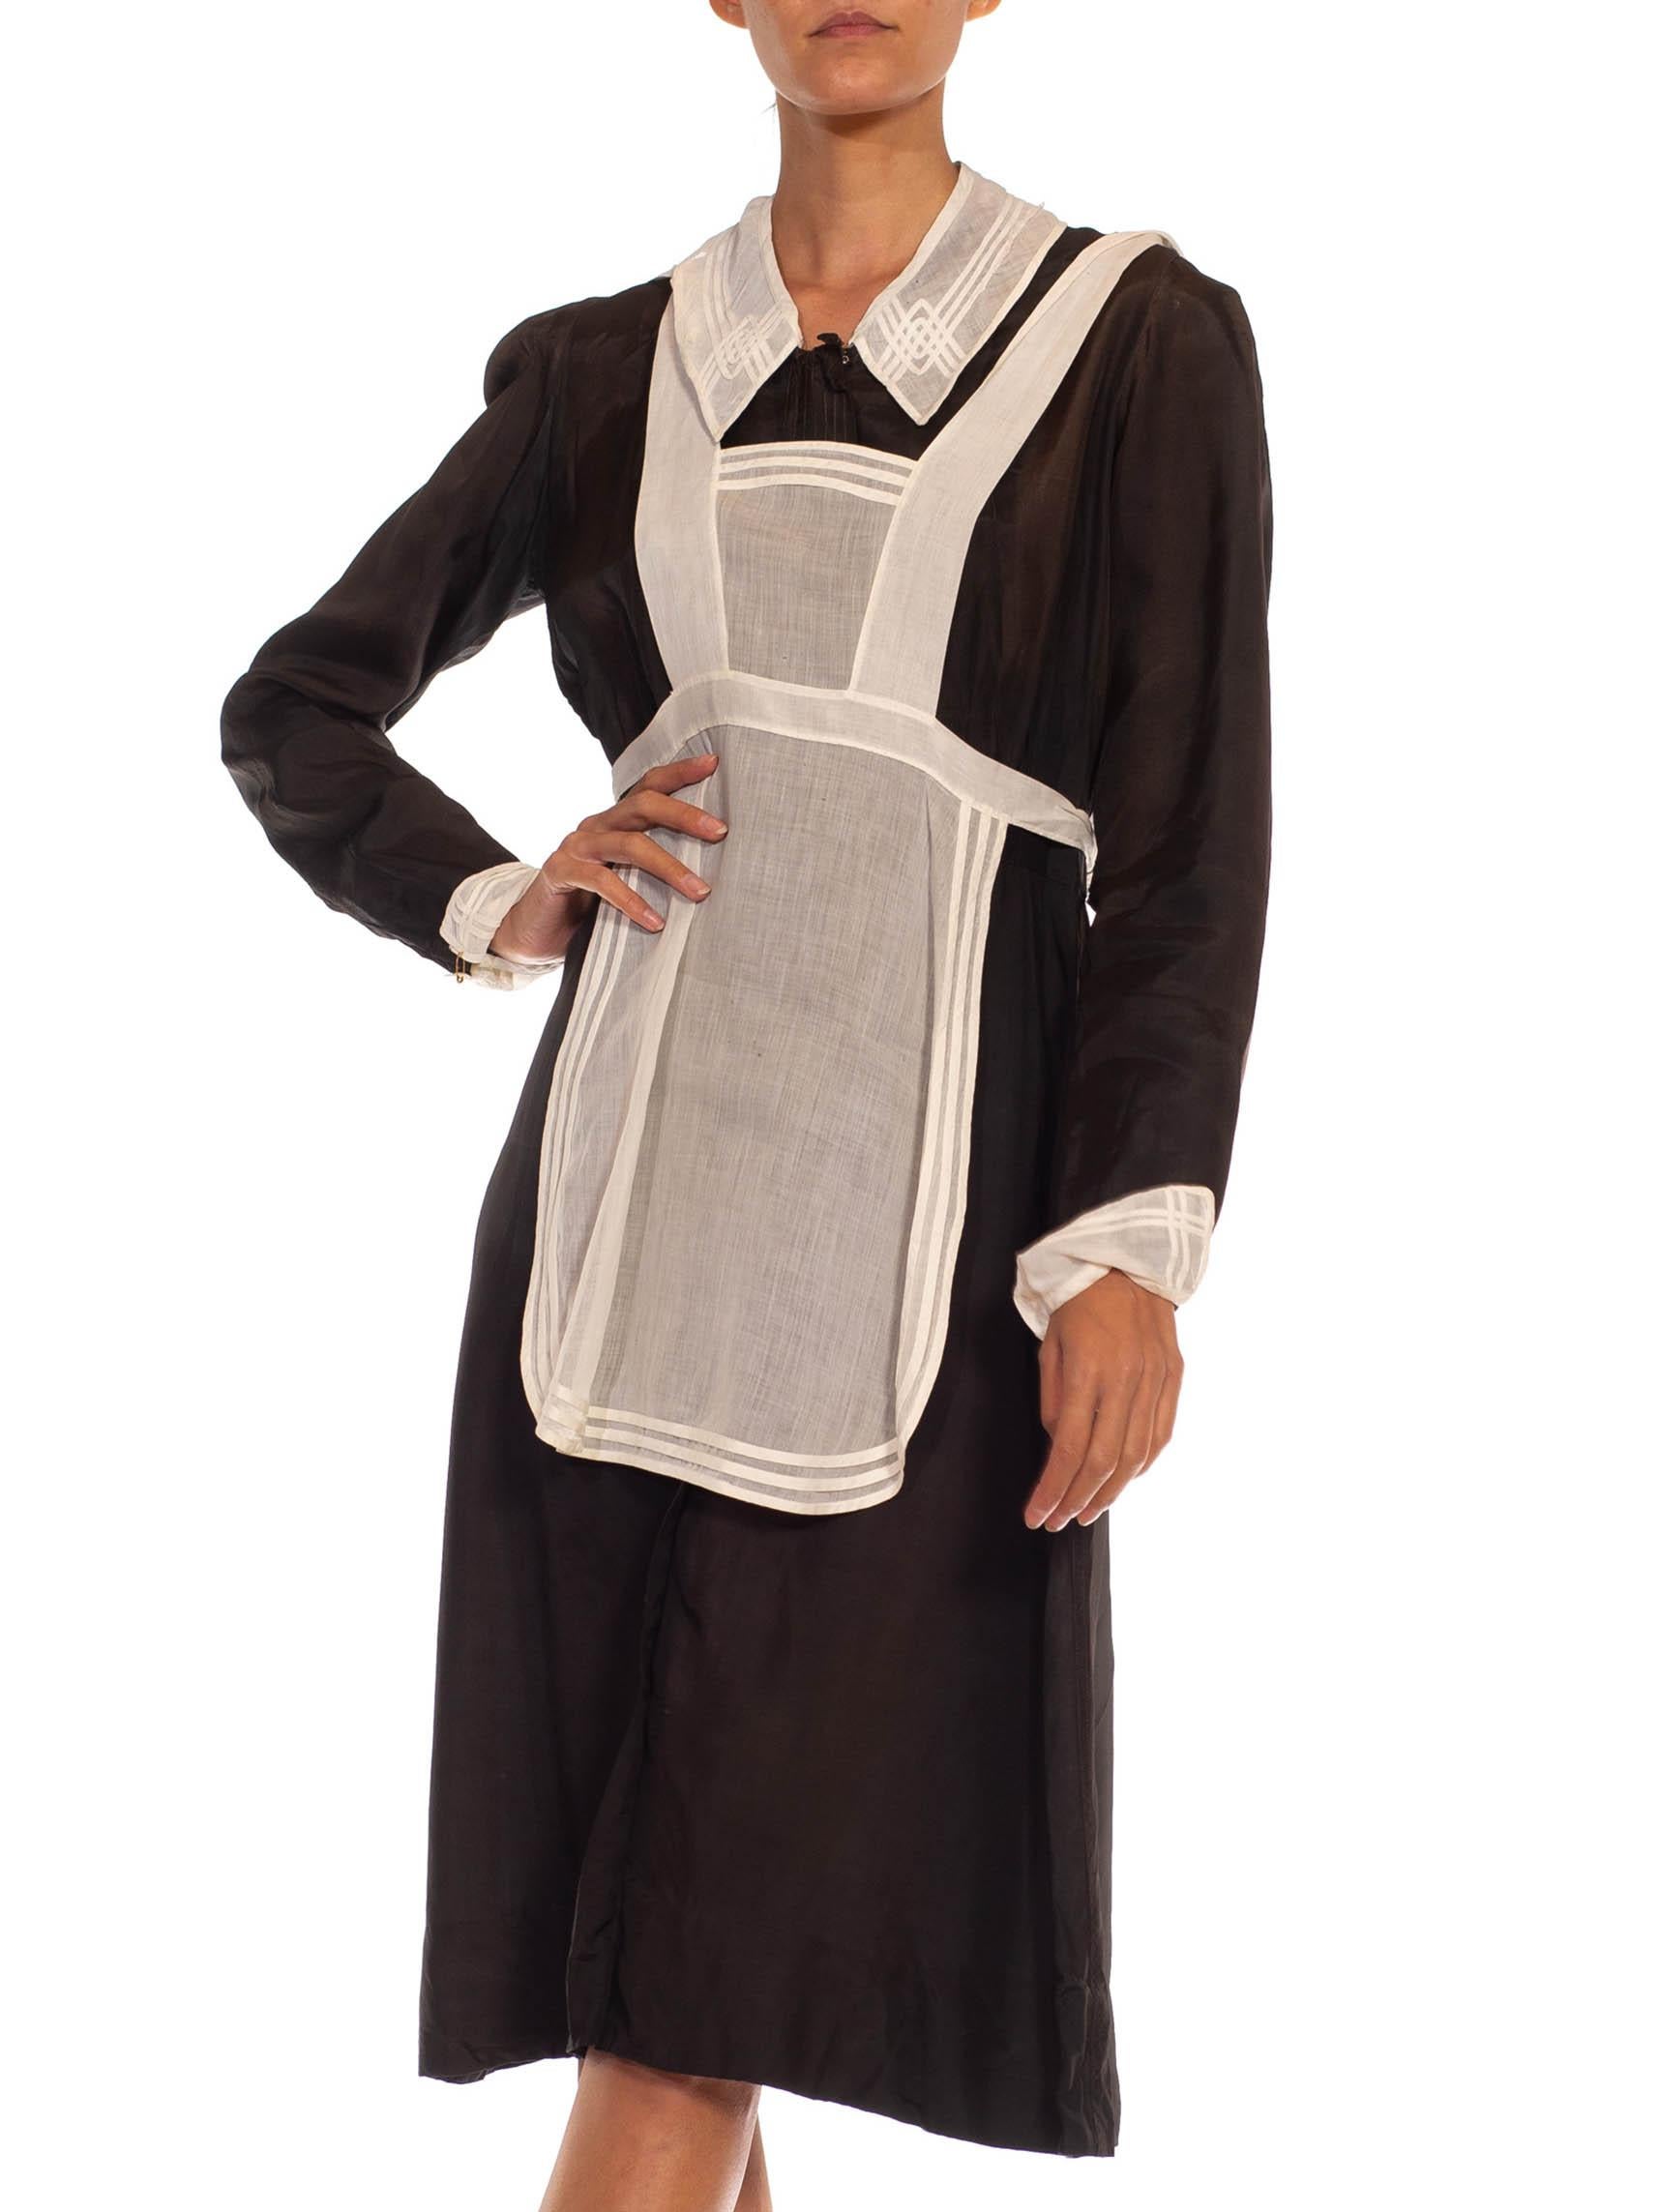 1930 maid uniform